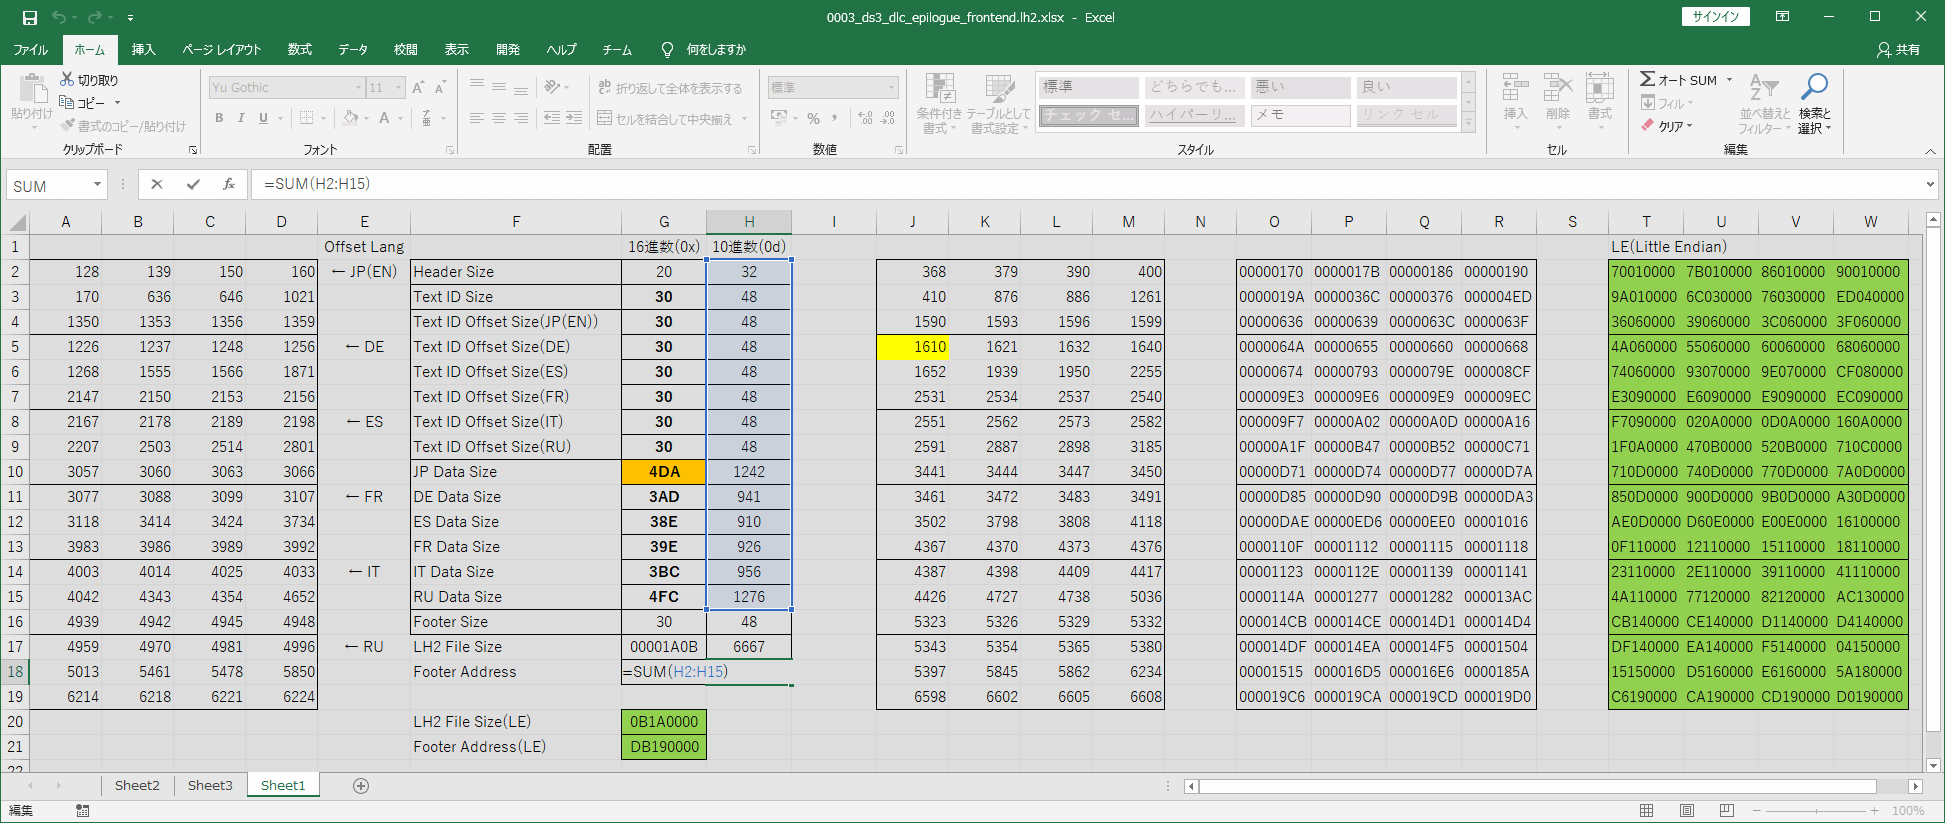 PC ゲーム旧版 DEAD SPACE シリーズ（2008～2013）日本語化ファイル解析情報、PC ゲーム DEAD SPACE 3 Awakened 日本語化ファイル解析メモとアンパック・解析データ公開、lh2 ファイルバイナリデータオフセット書き換え用 Excel ファイル解説、Header から RU Data Size までの 10進数数値を SUM 関数で合計し Footer Data のアドレスを計算